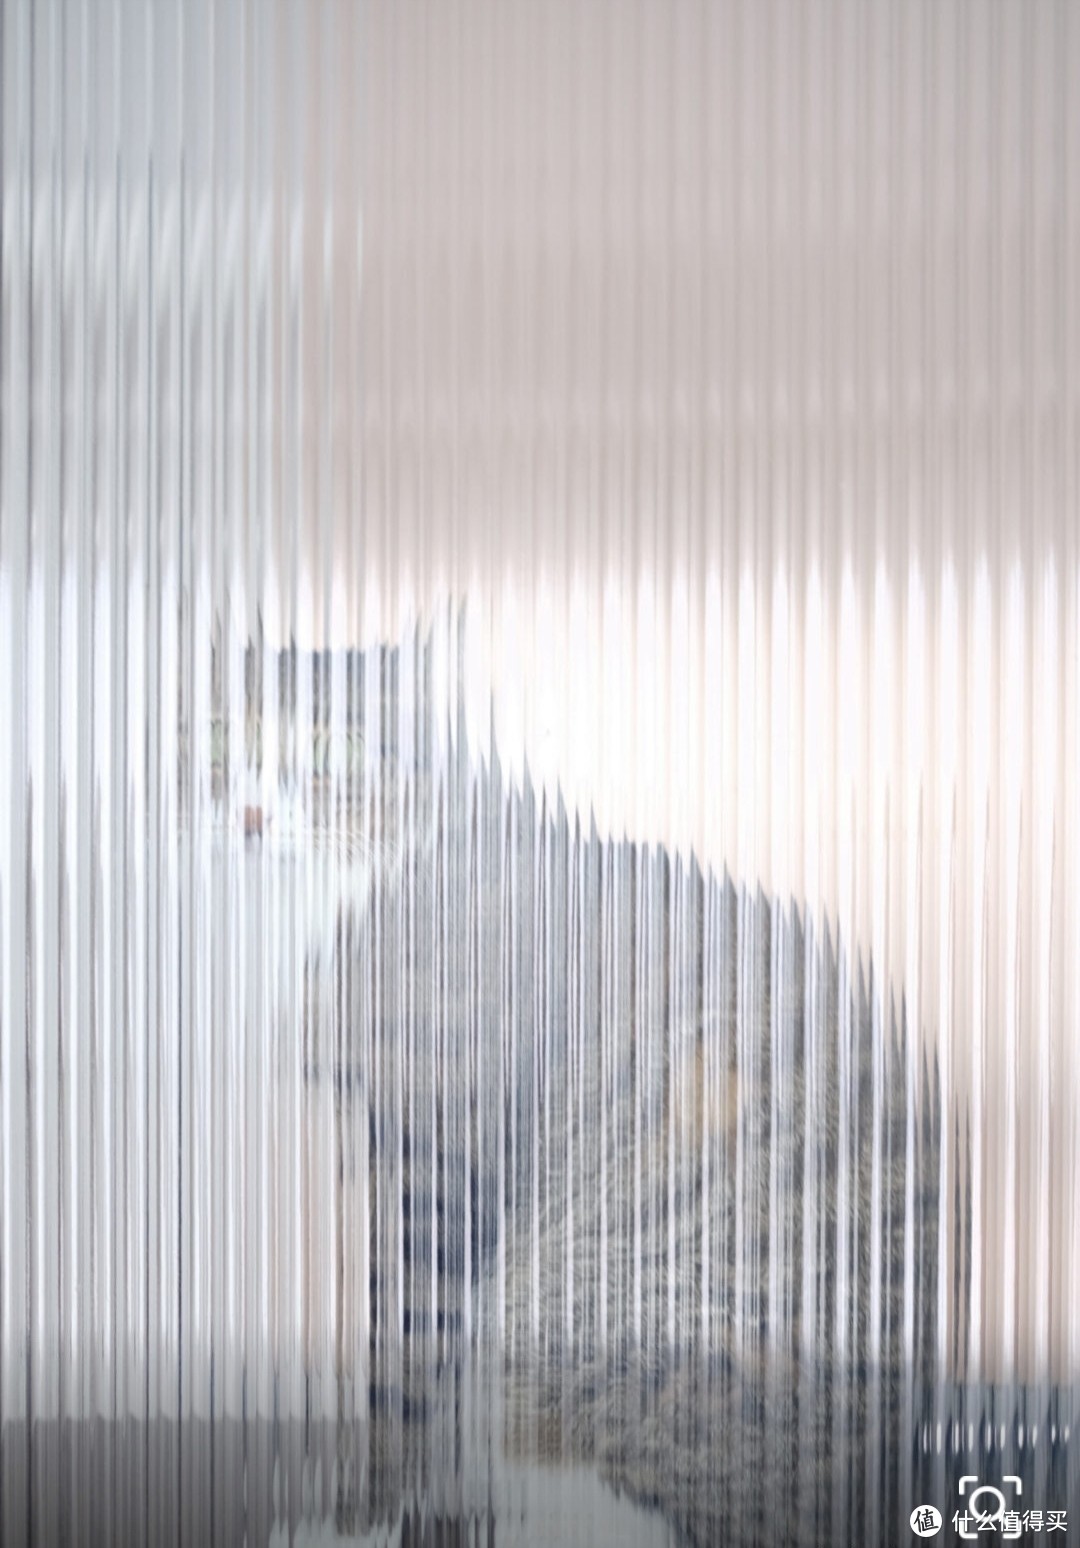 猫咪在长虹玻璃另一边的透视效果